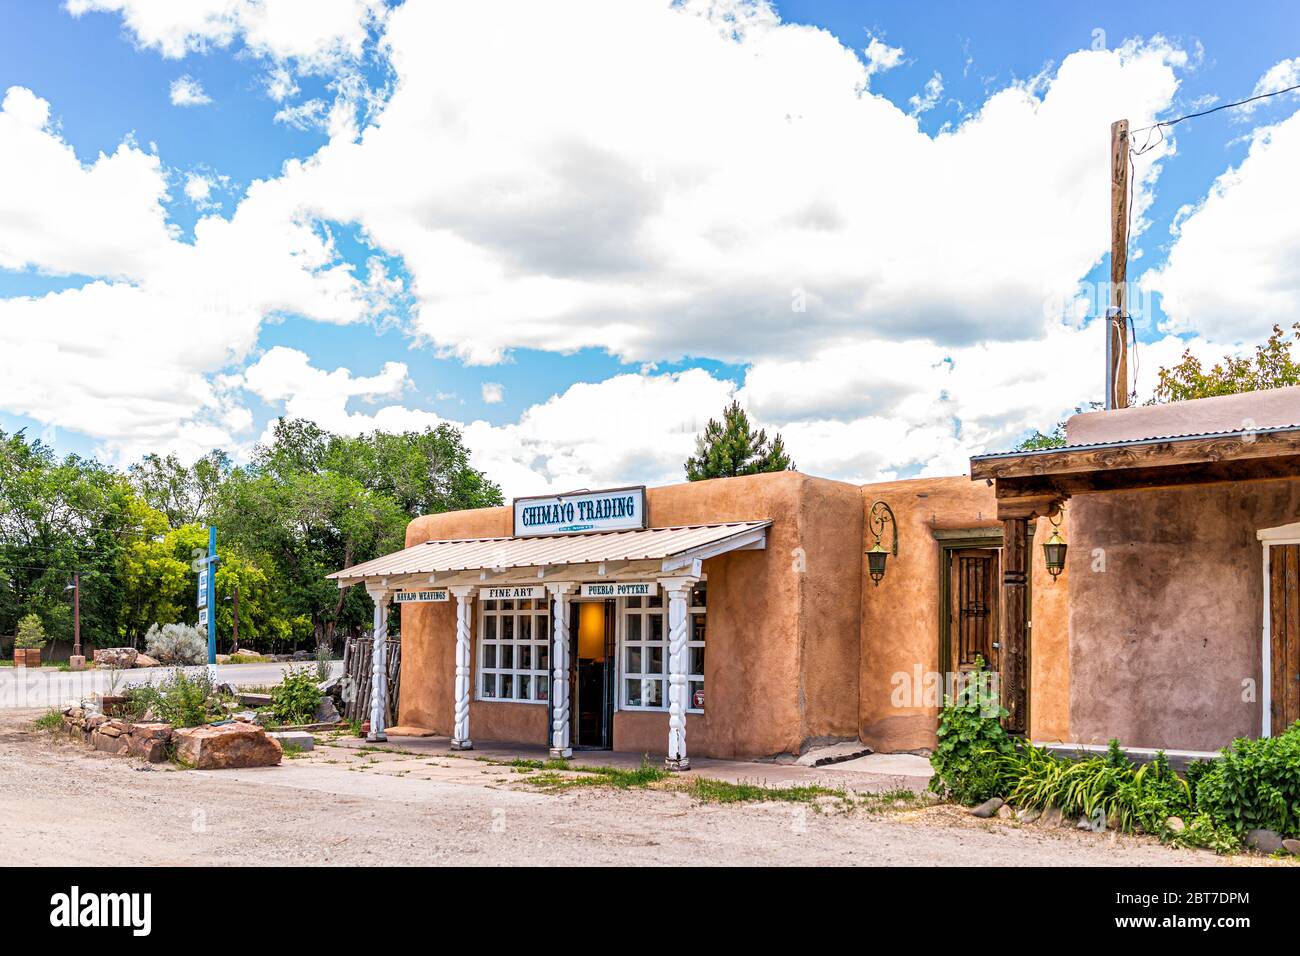 Ranchos de Taos, USA - 19 giugno 2019: Famosa Piazza San Francico nel New Mexico con Taos trading post store che vende souvenir segno chimayo Foto Stock